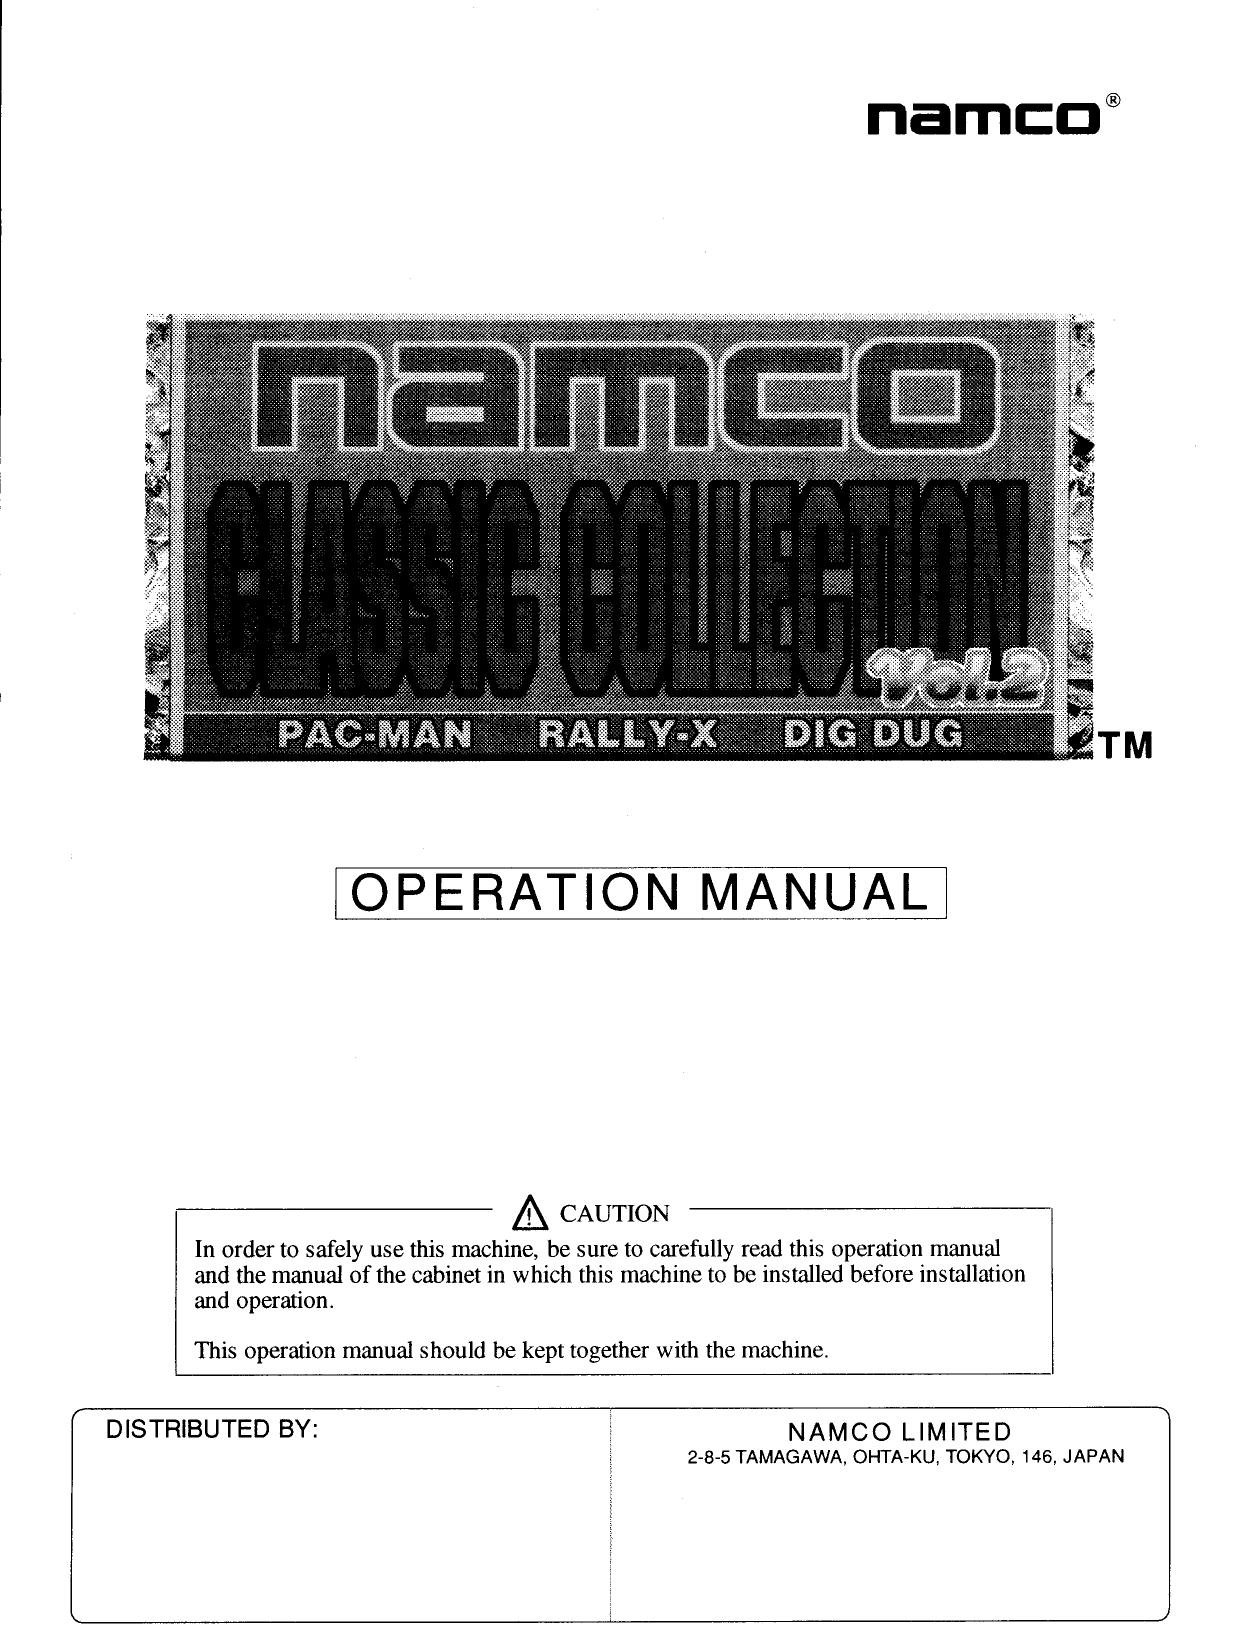 Namco Classics Vol 2